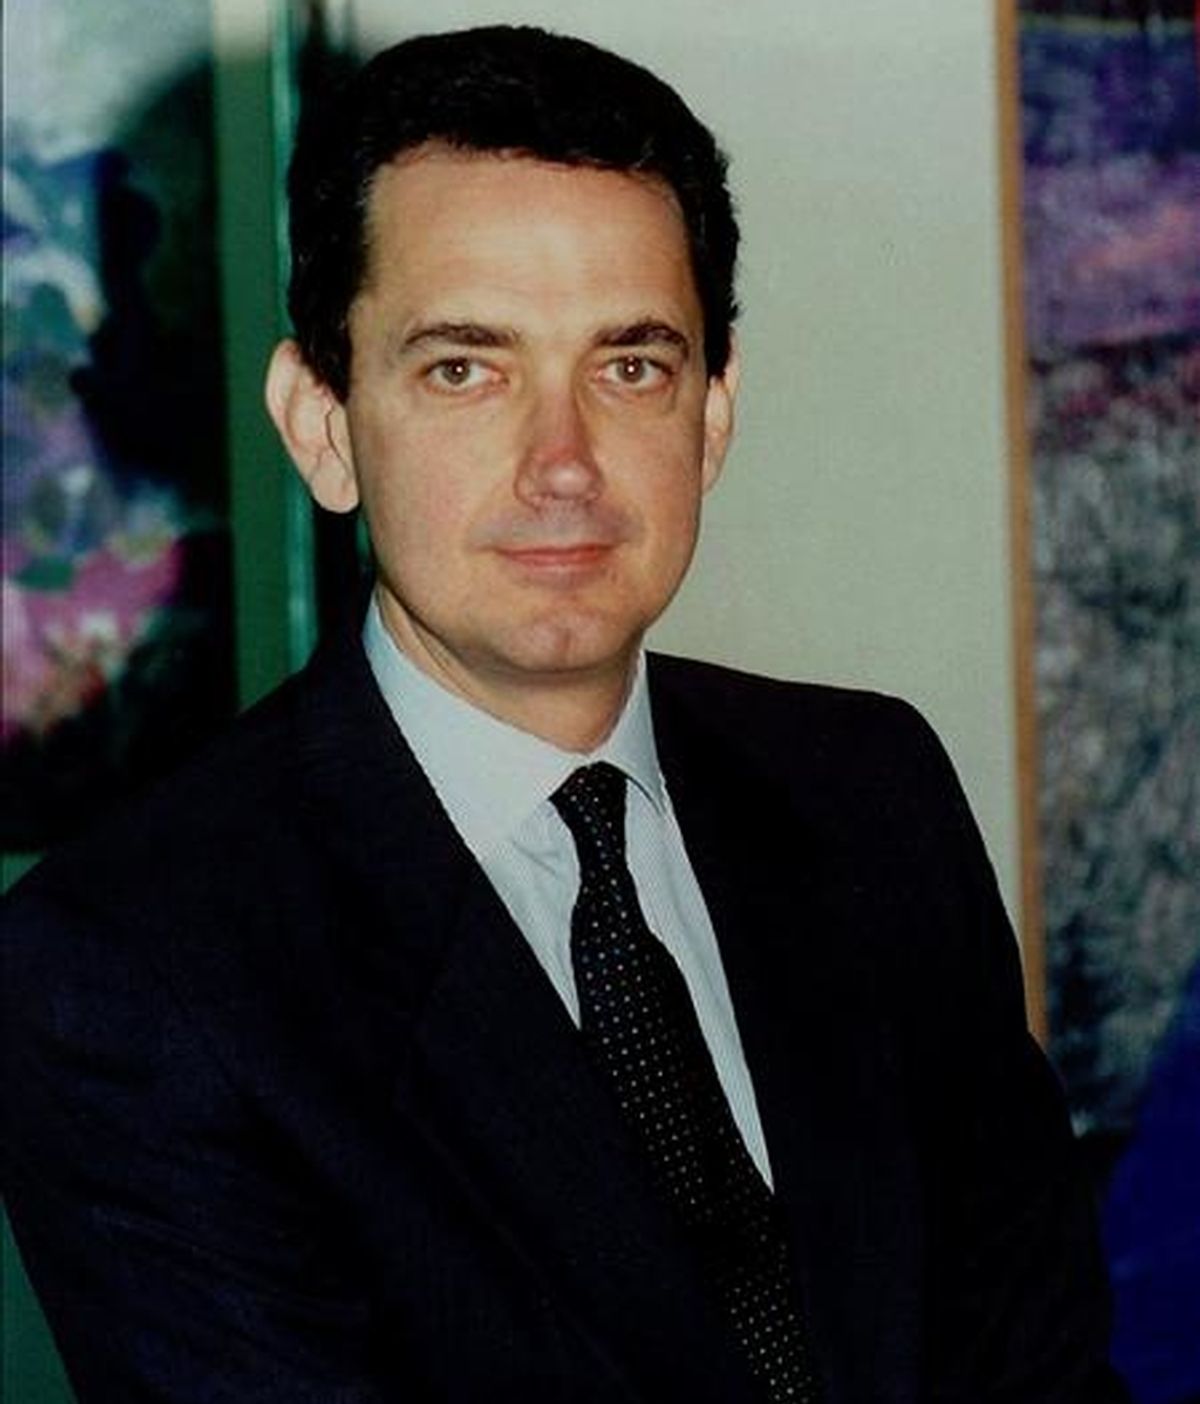 El consejero delegado de Telecom Italia, Franco Bernabe. EFE/Archivo